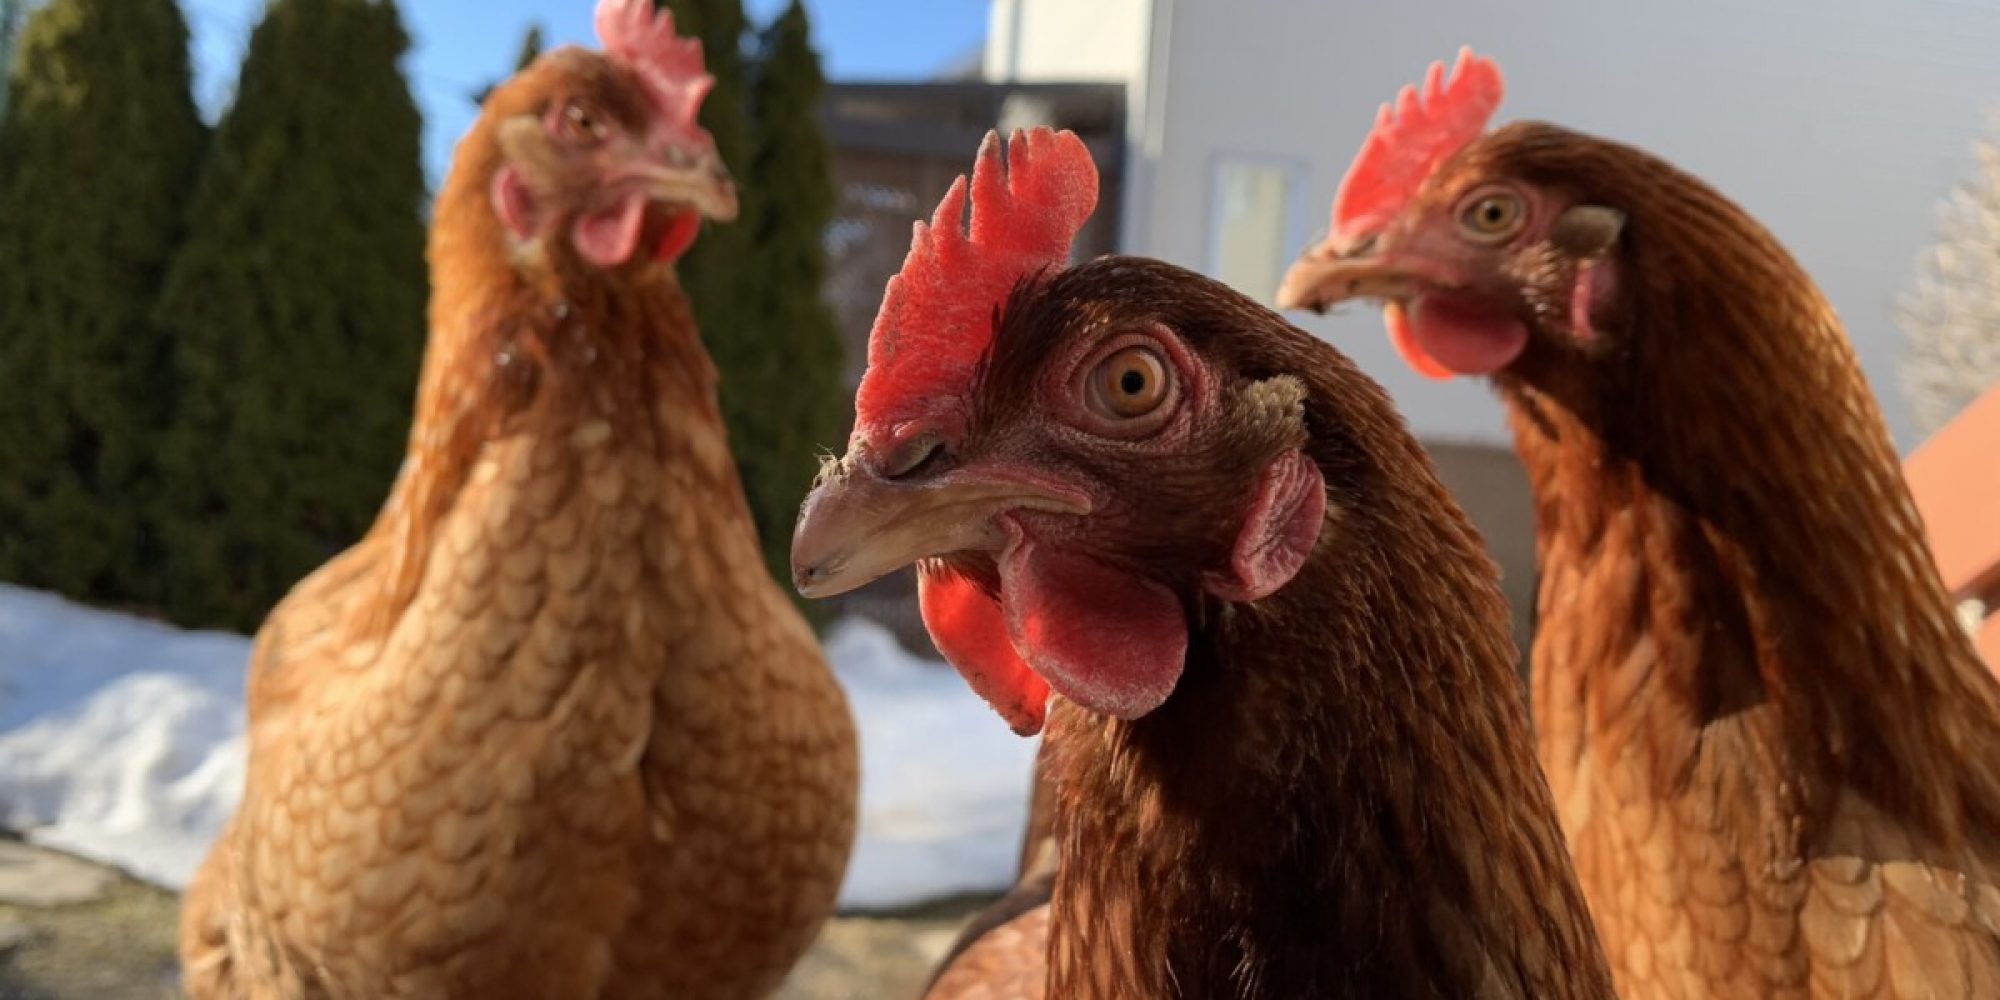 Les maladies fréquentes chez les poules : reconnaître les